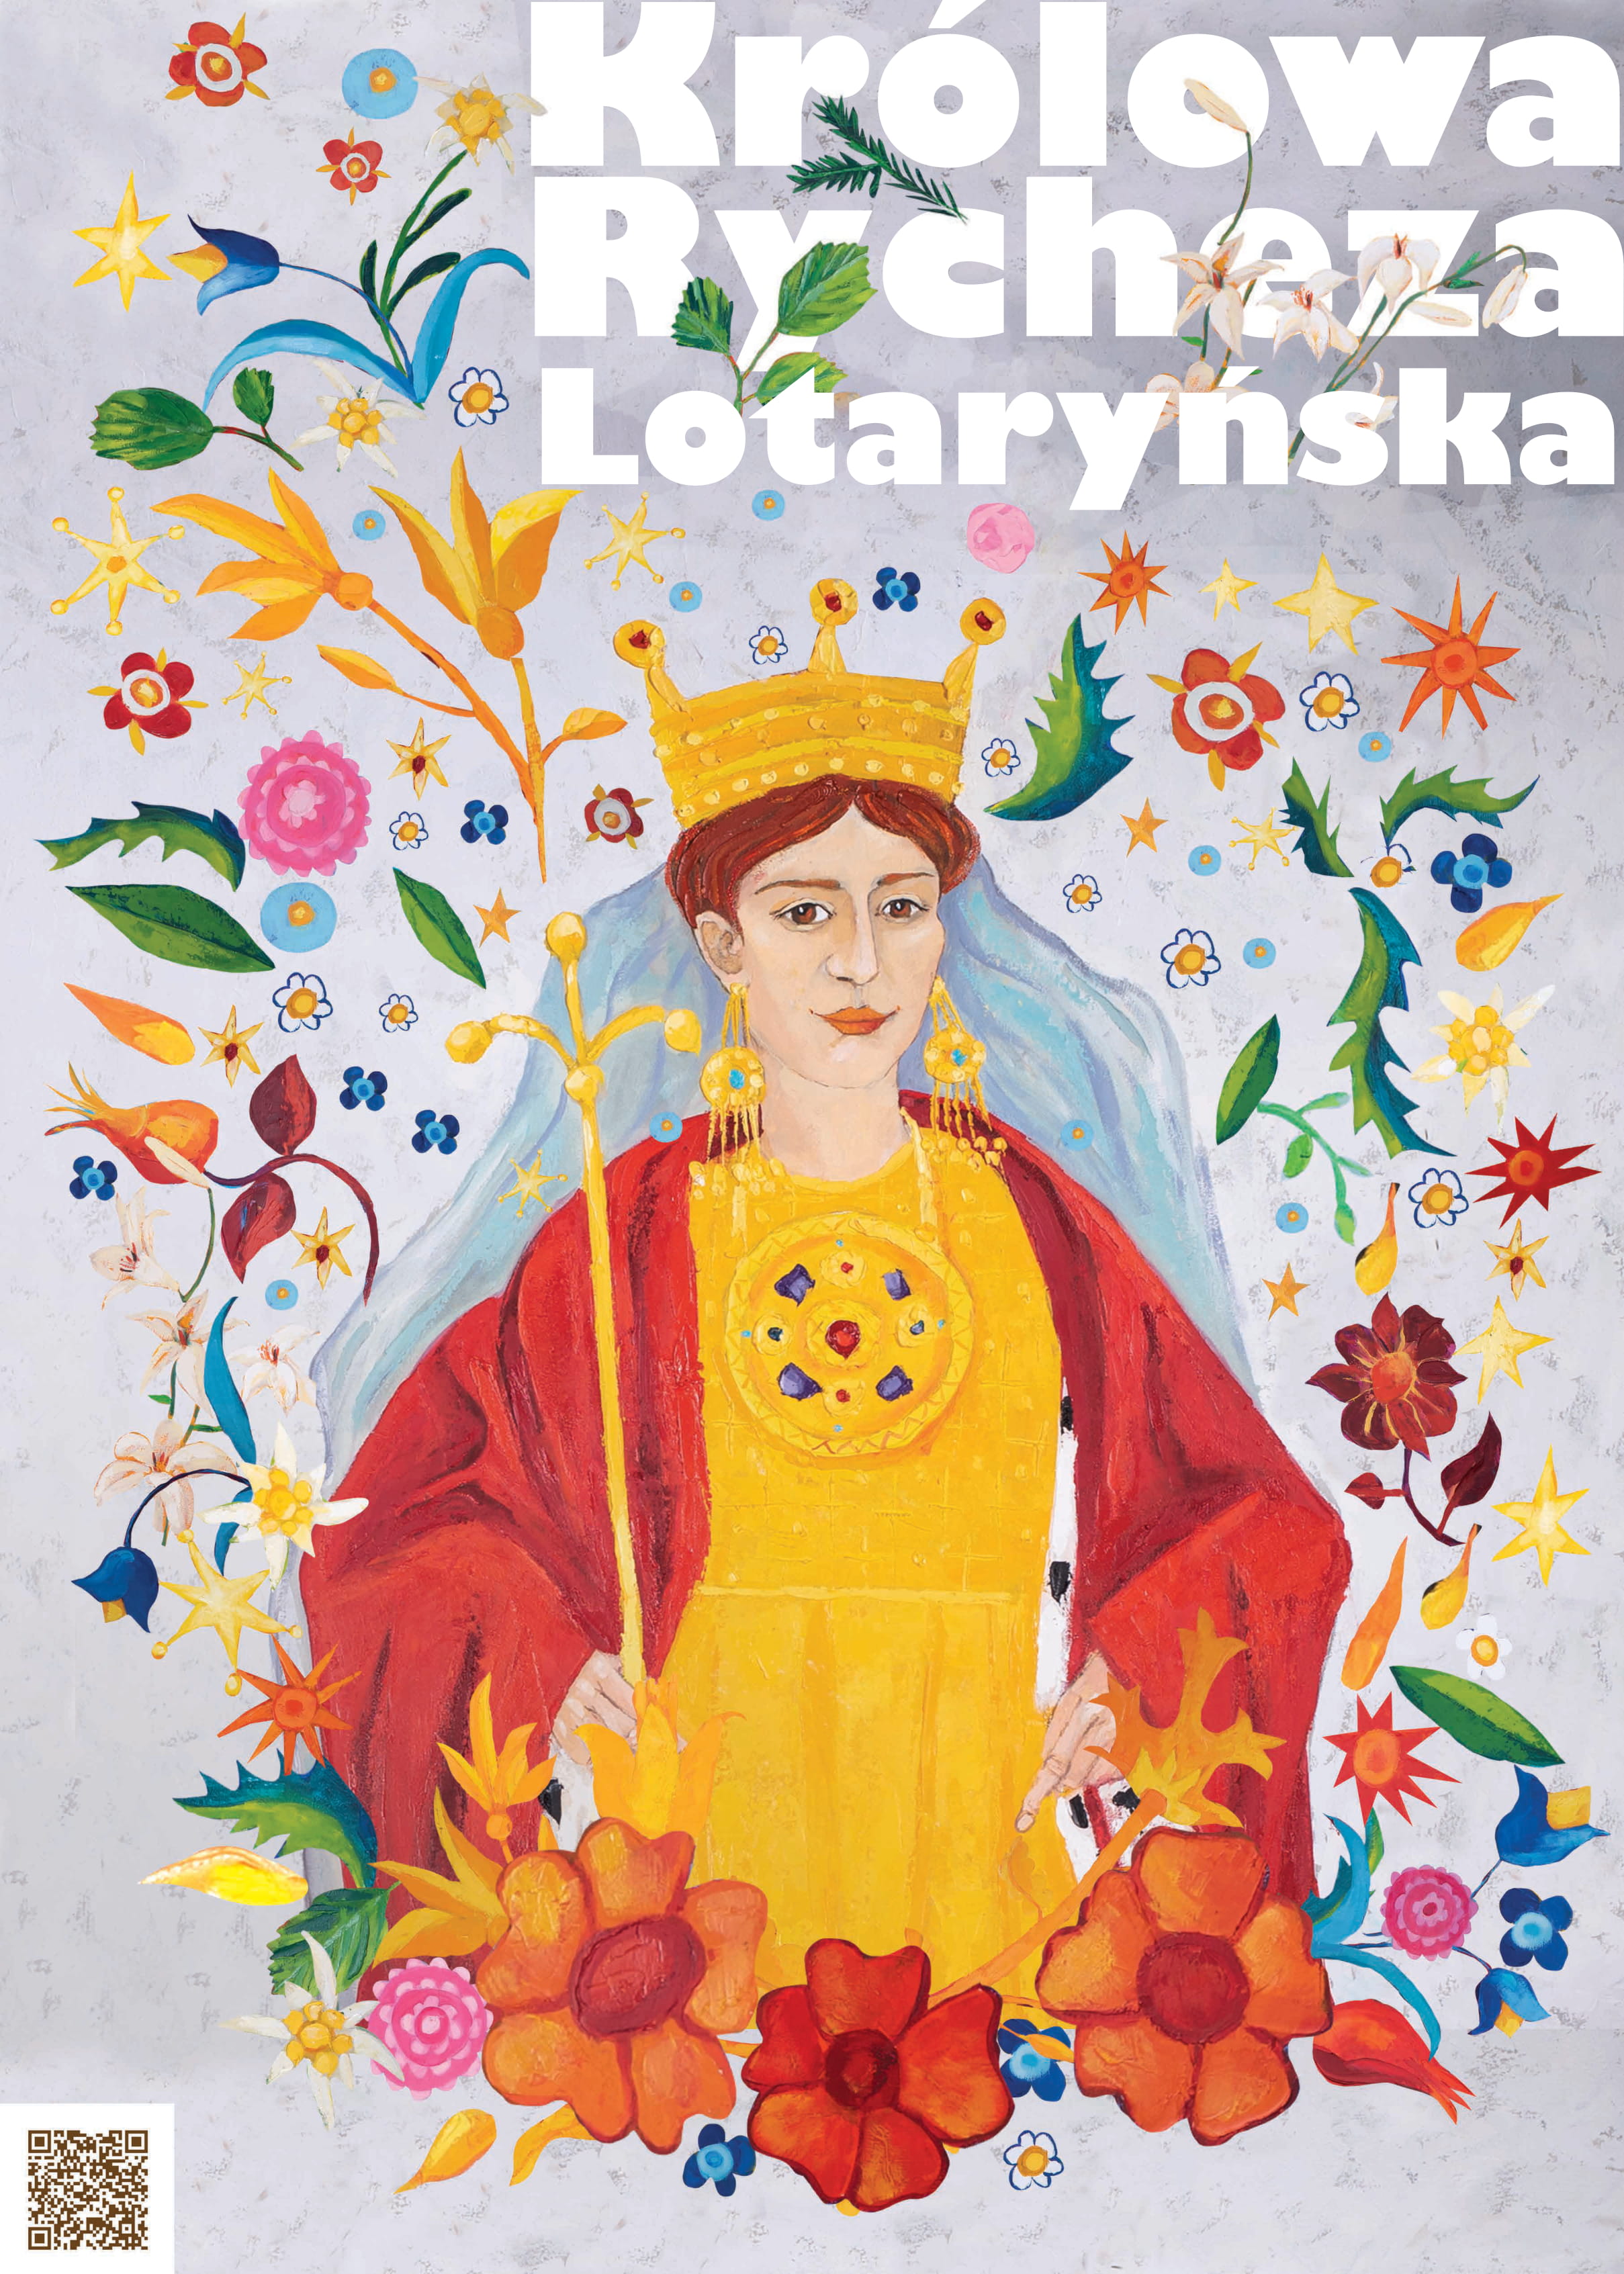 Projekty królewskich murali - Rycheza Lotaryńska